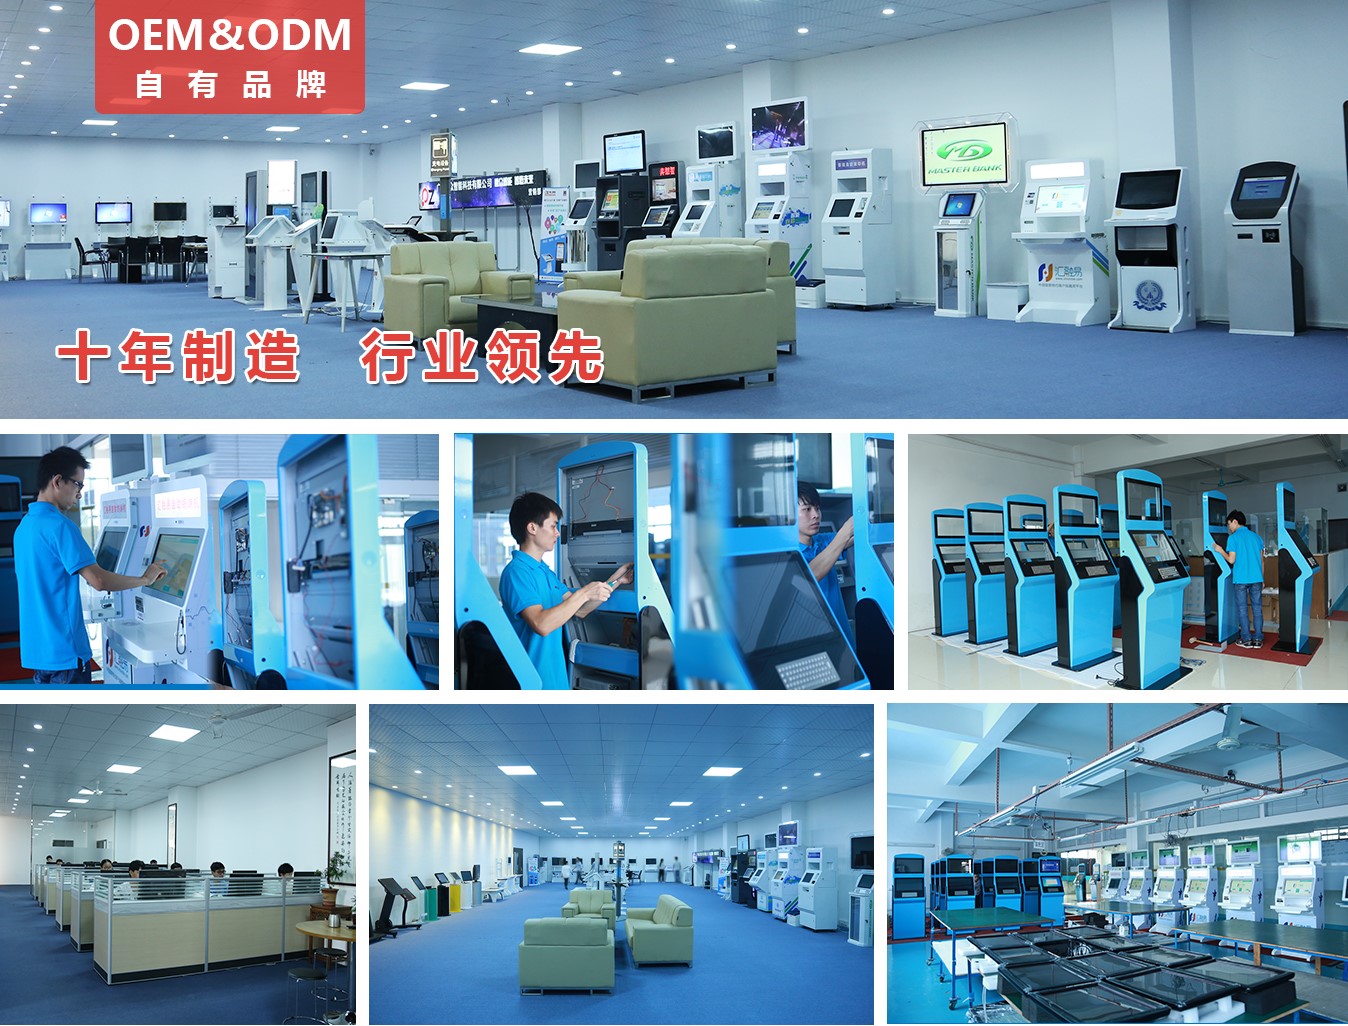 21.5寸壁挂式横屏广告机PZ-21.5BE2--广州磐众智能科技有限公司